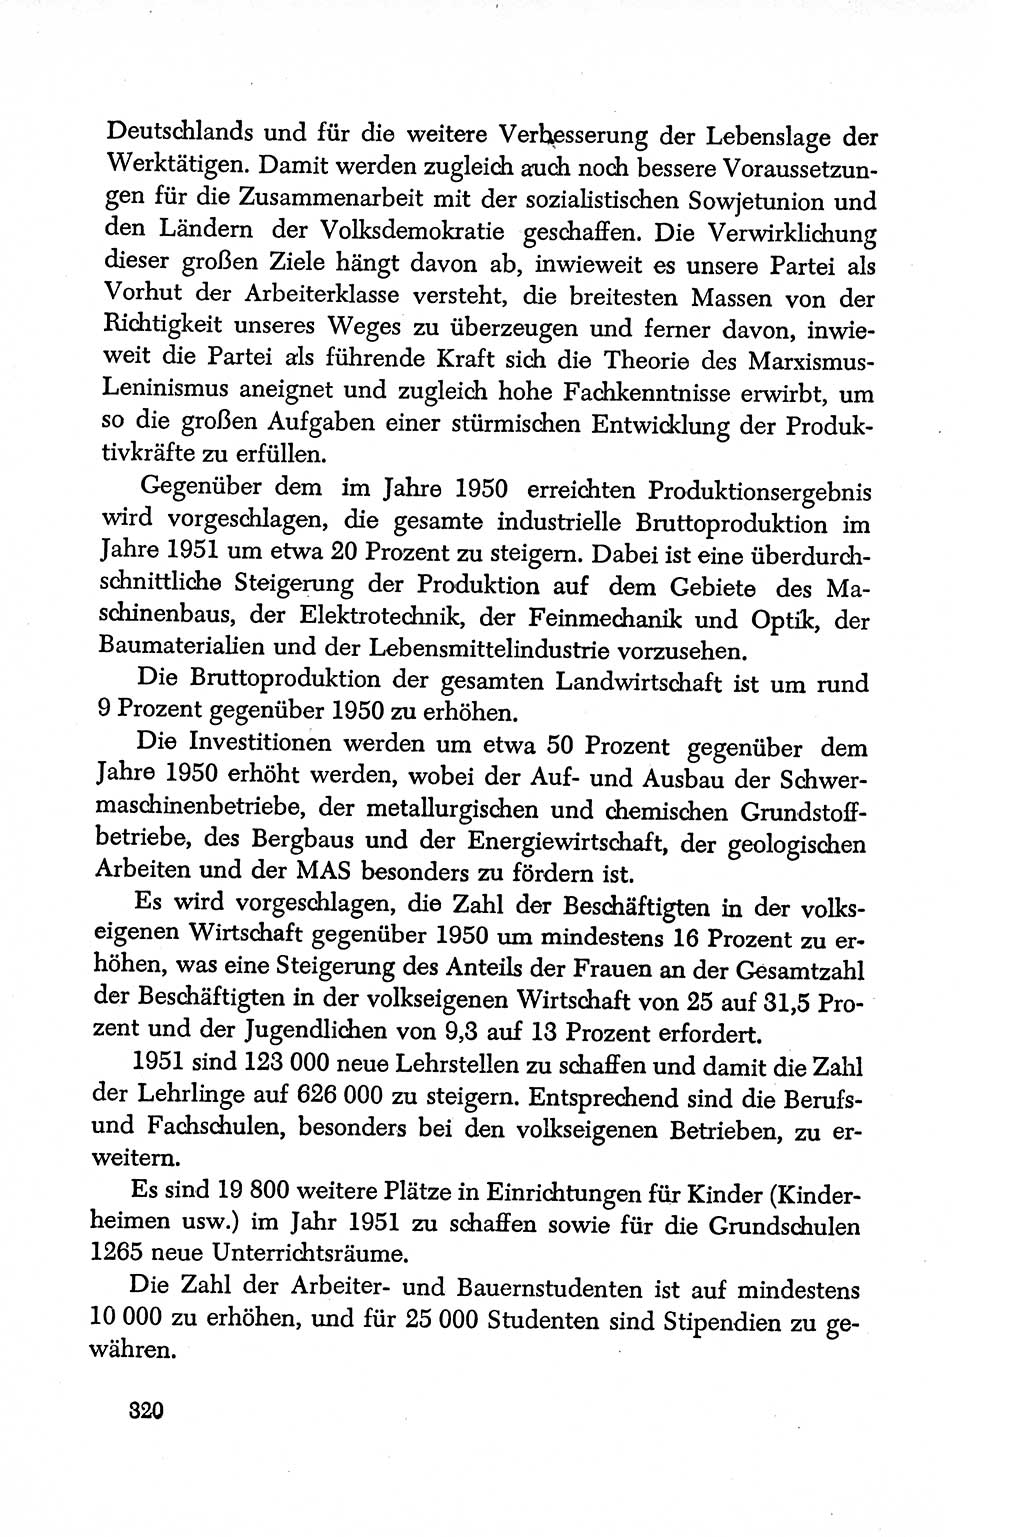 Dokumente der Sozialistischen Einheitspartei Deutschlands (SED) [Deutsche Demokratische Republik (DDR)] 1950-1952, Seite 320 (Dok. SED DDR 1950-1952, S. 320)